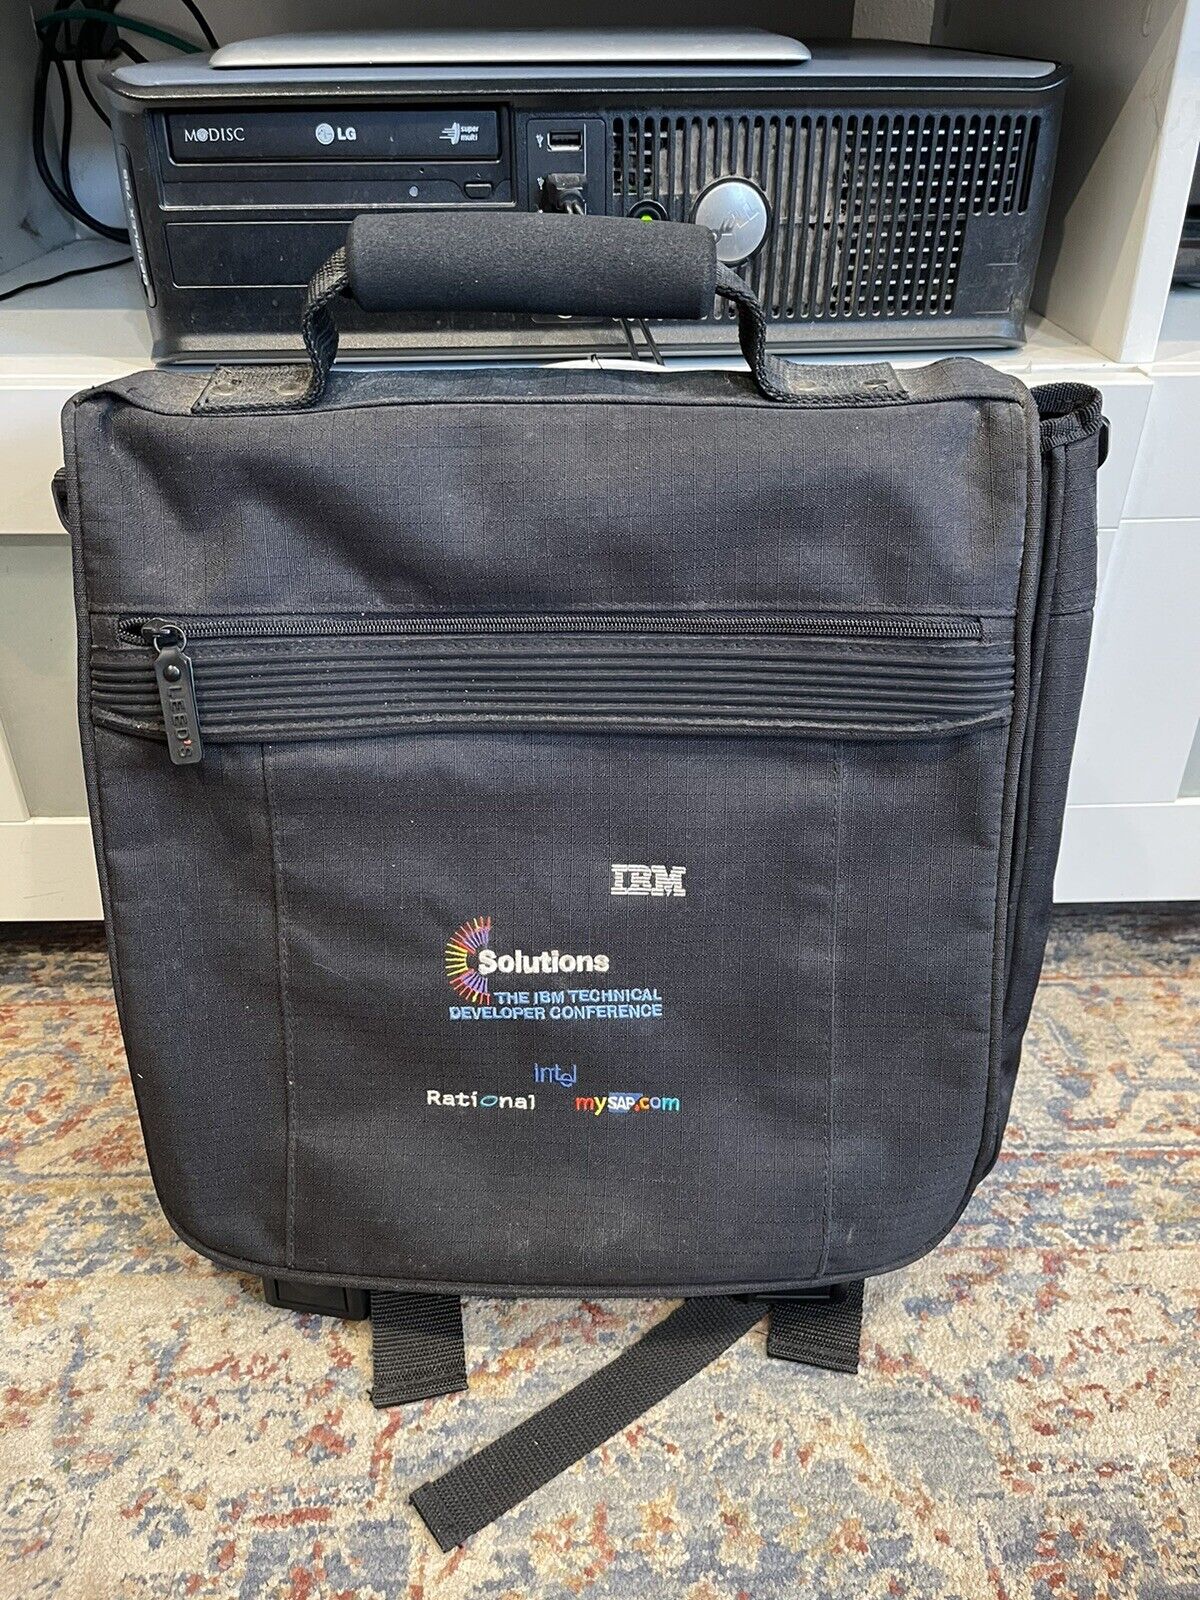 Vintage IBM Solutions Conference Shoulder Carry Travel Messenger Computer Bag